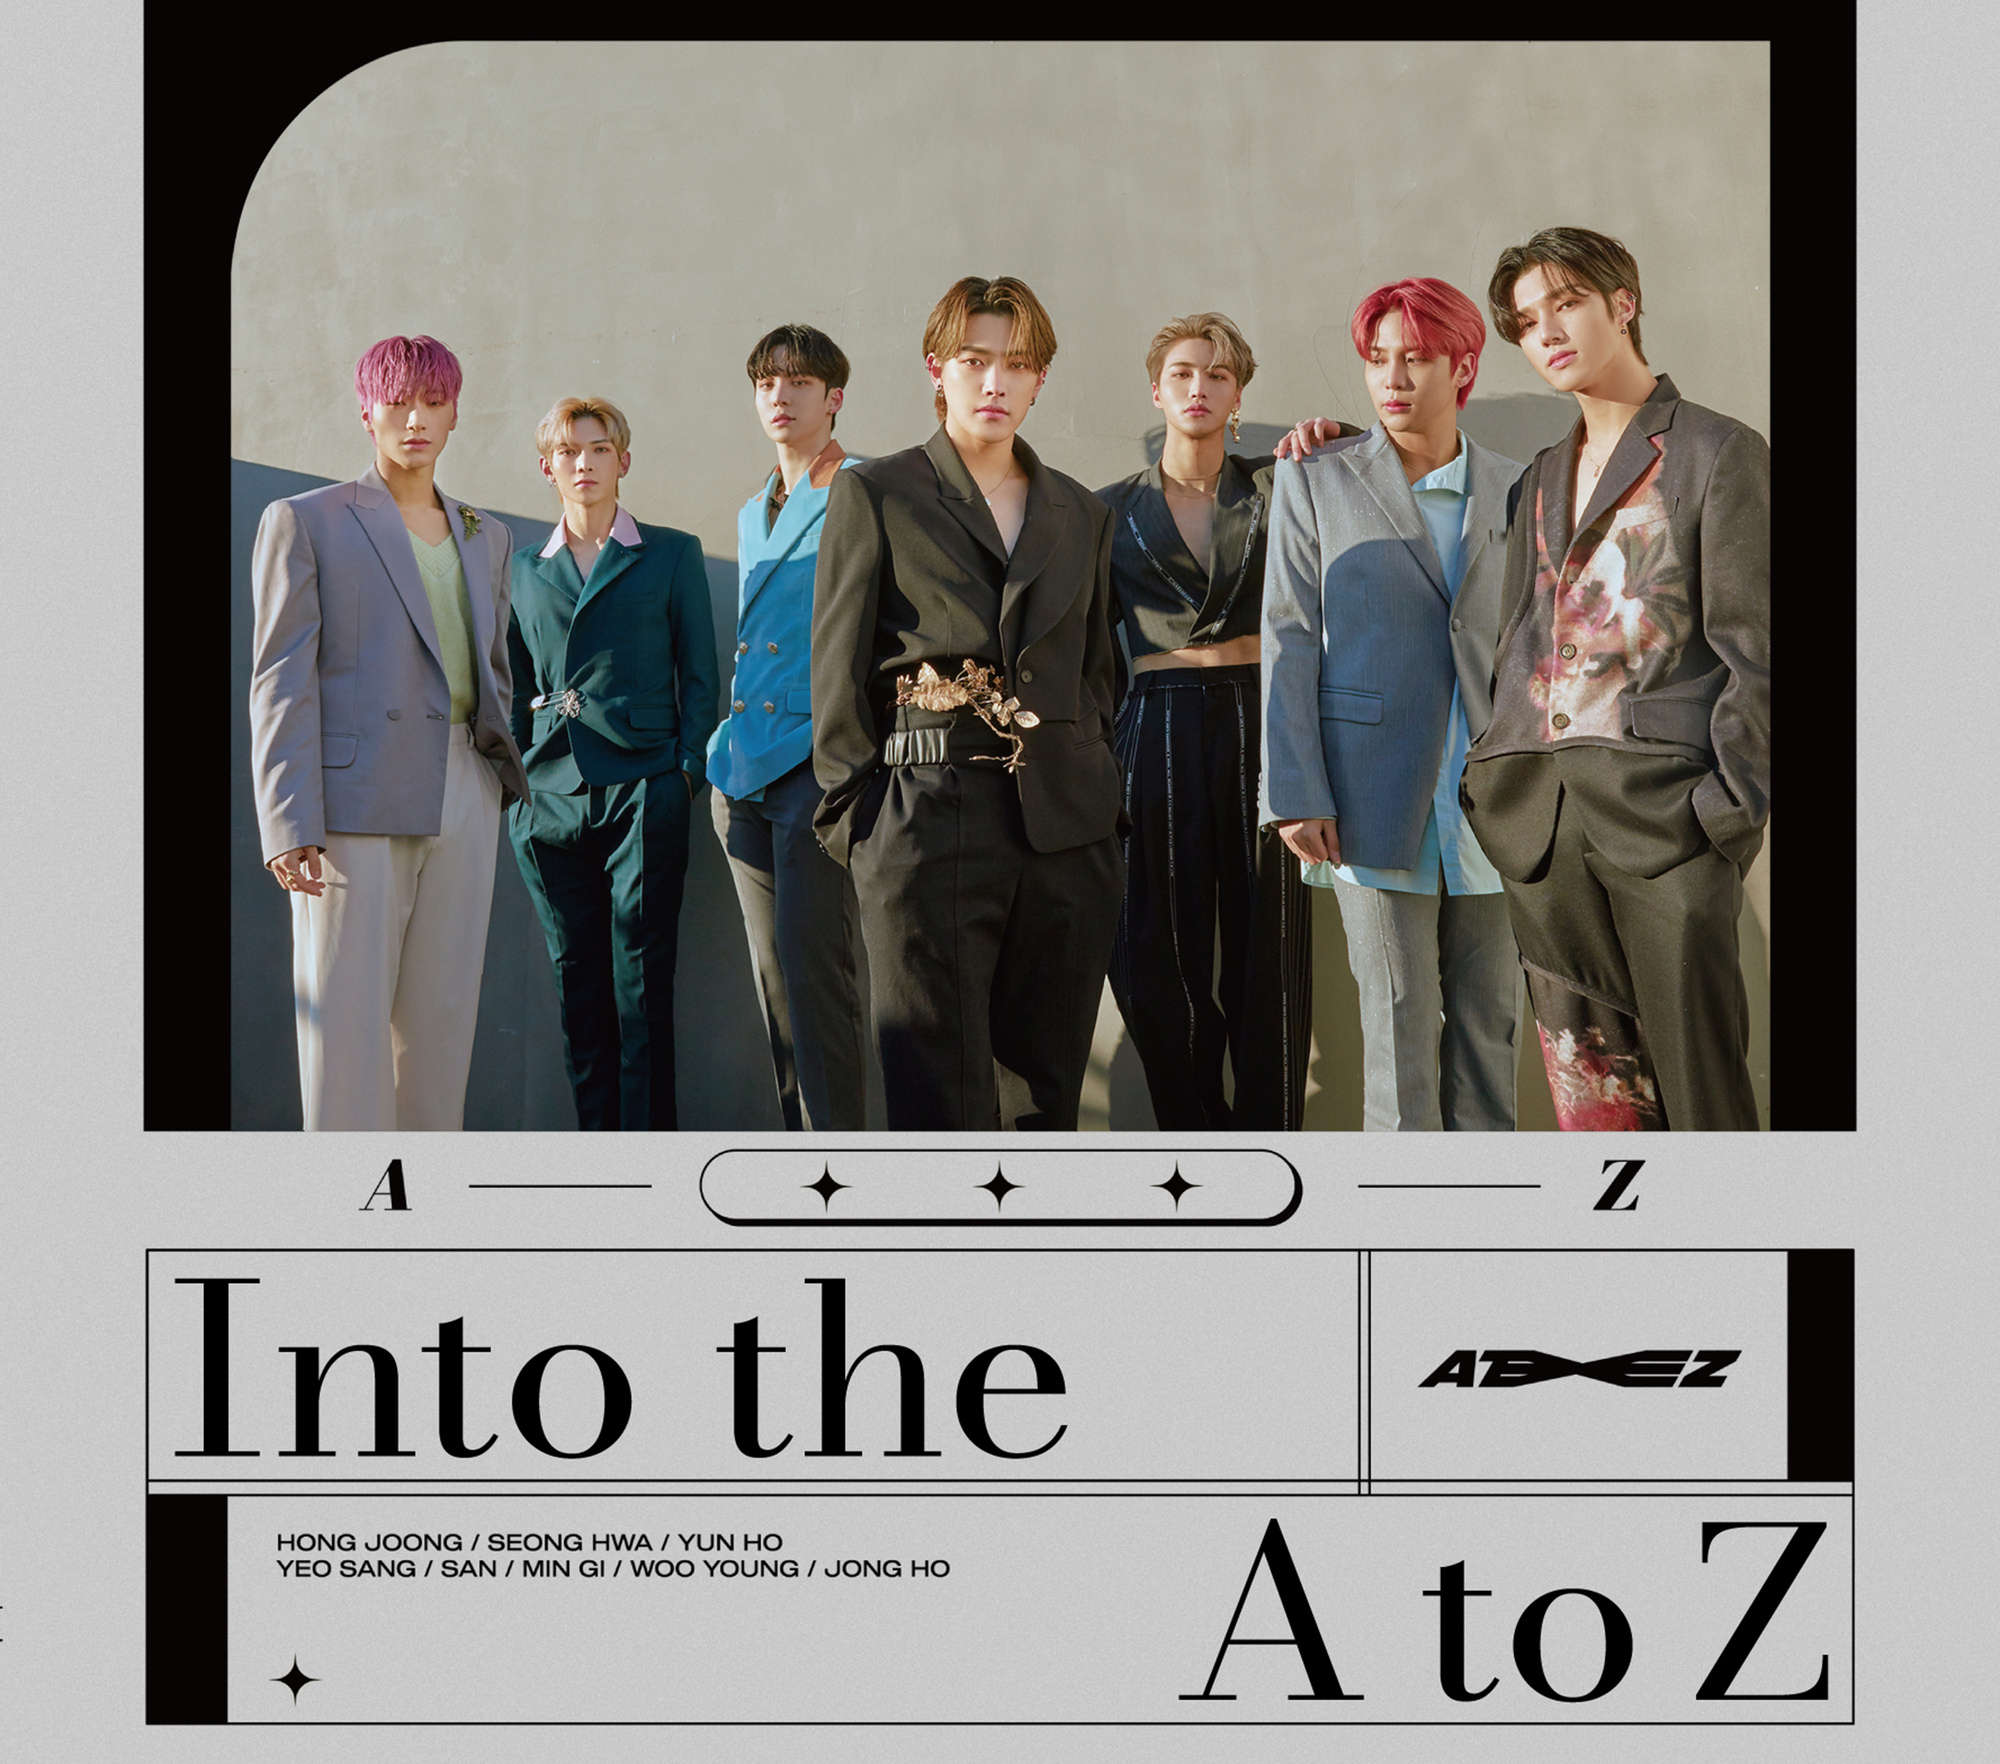 3月24日にATEEZ JAPAN 1st ORIGINAL ALBUM『Into the A to Z』発売決定 